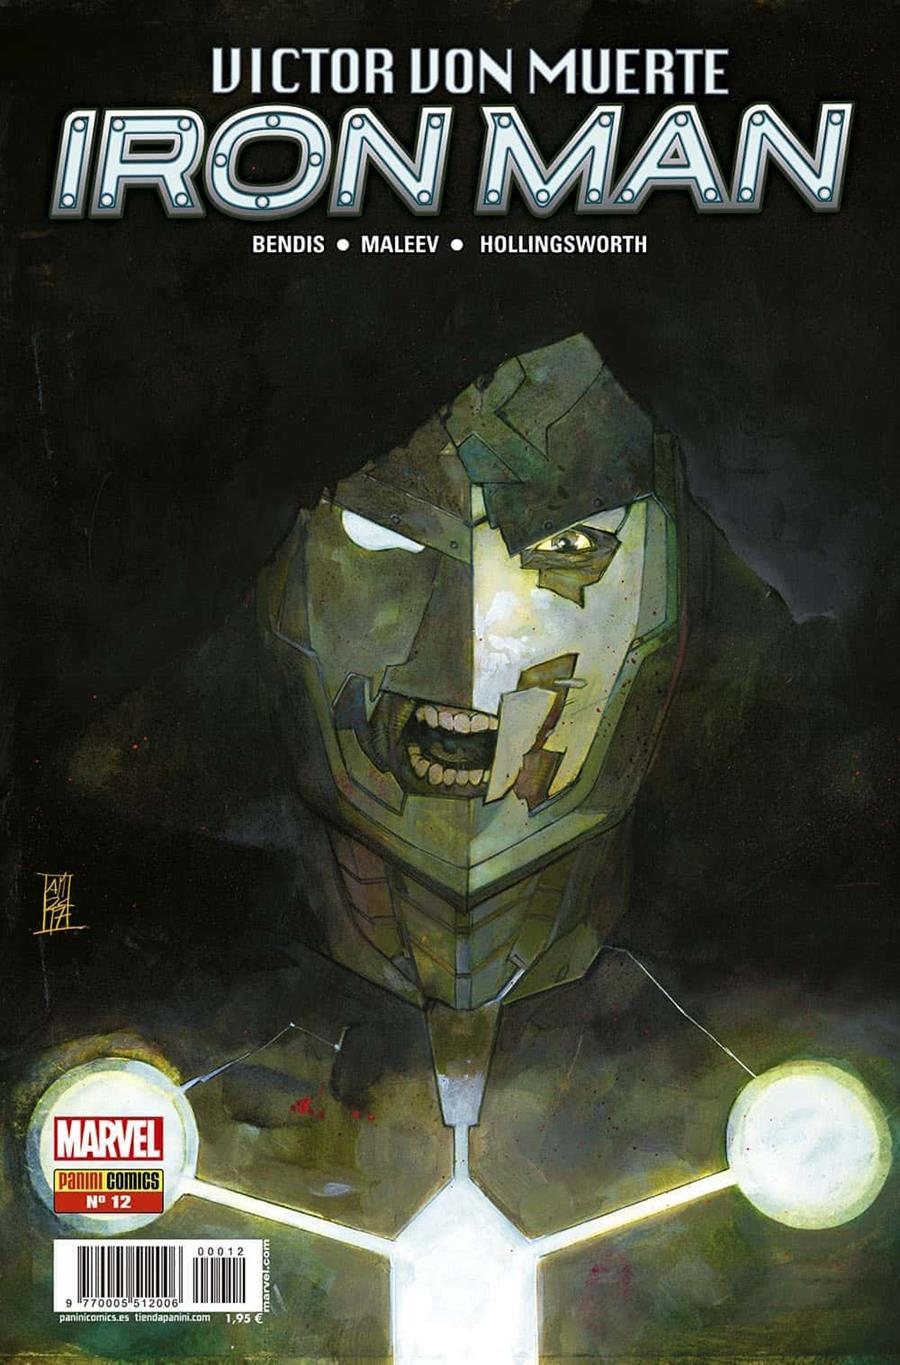 VICTOR VON MUERTE: IRON MAN Nº12 (ULTIMO NUMERO) | Akira Comics  - libreria donde comprar comics, juegos y libros online